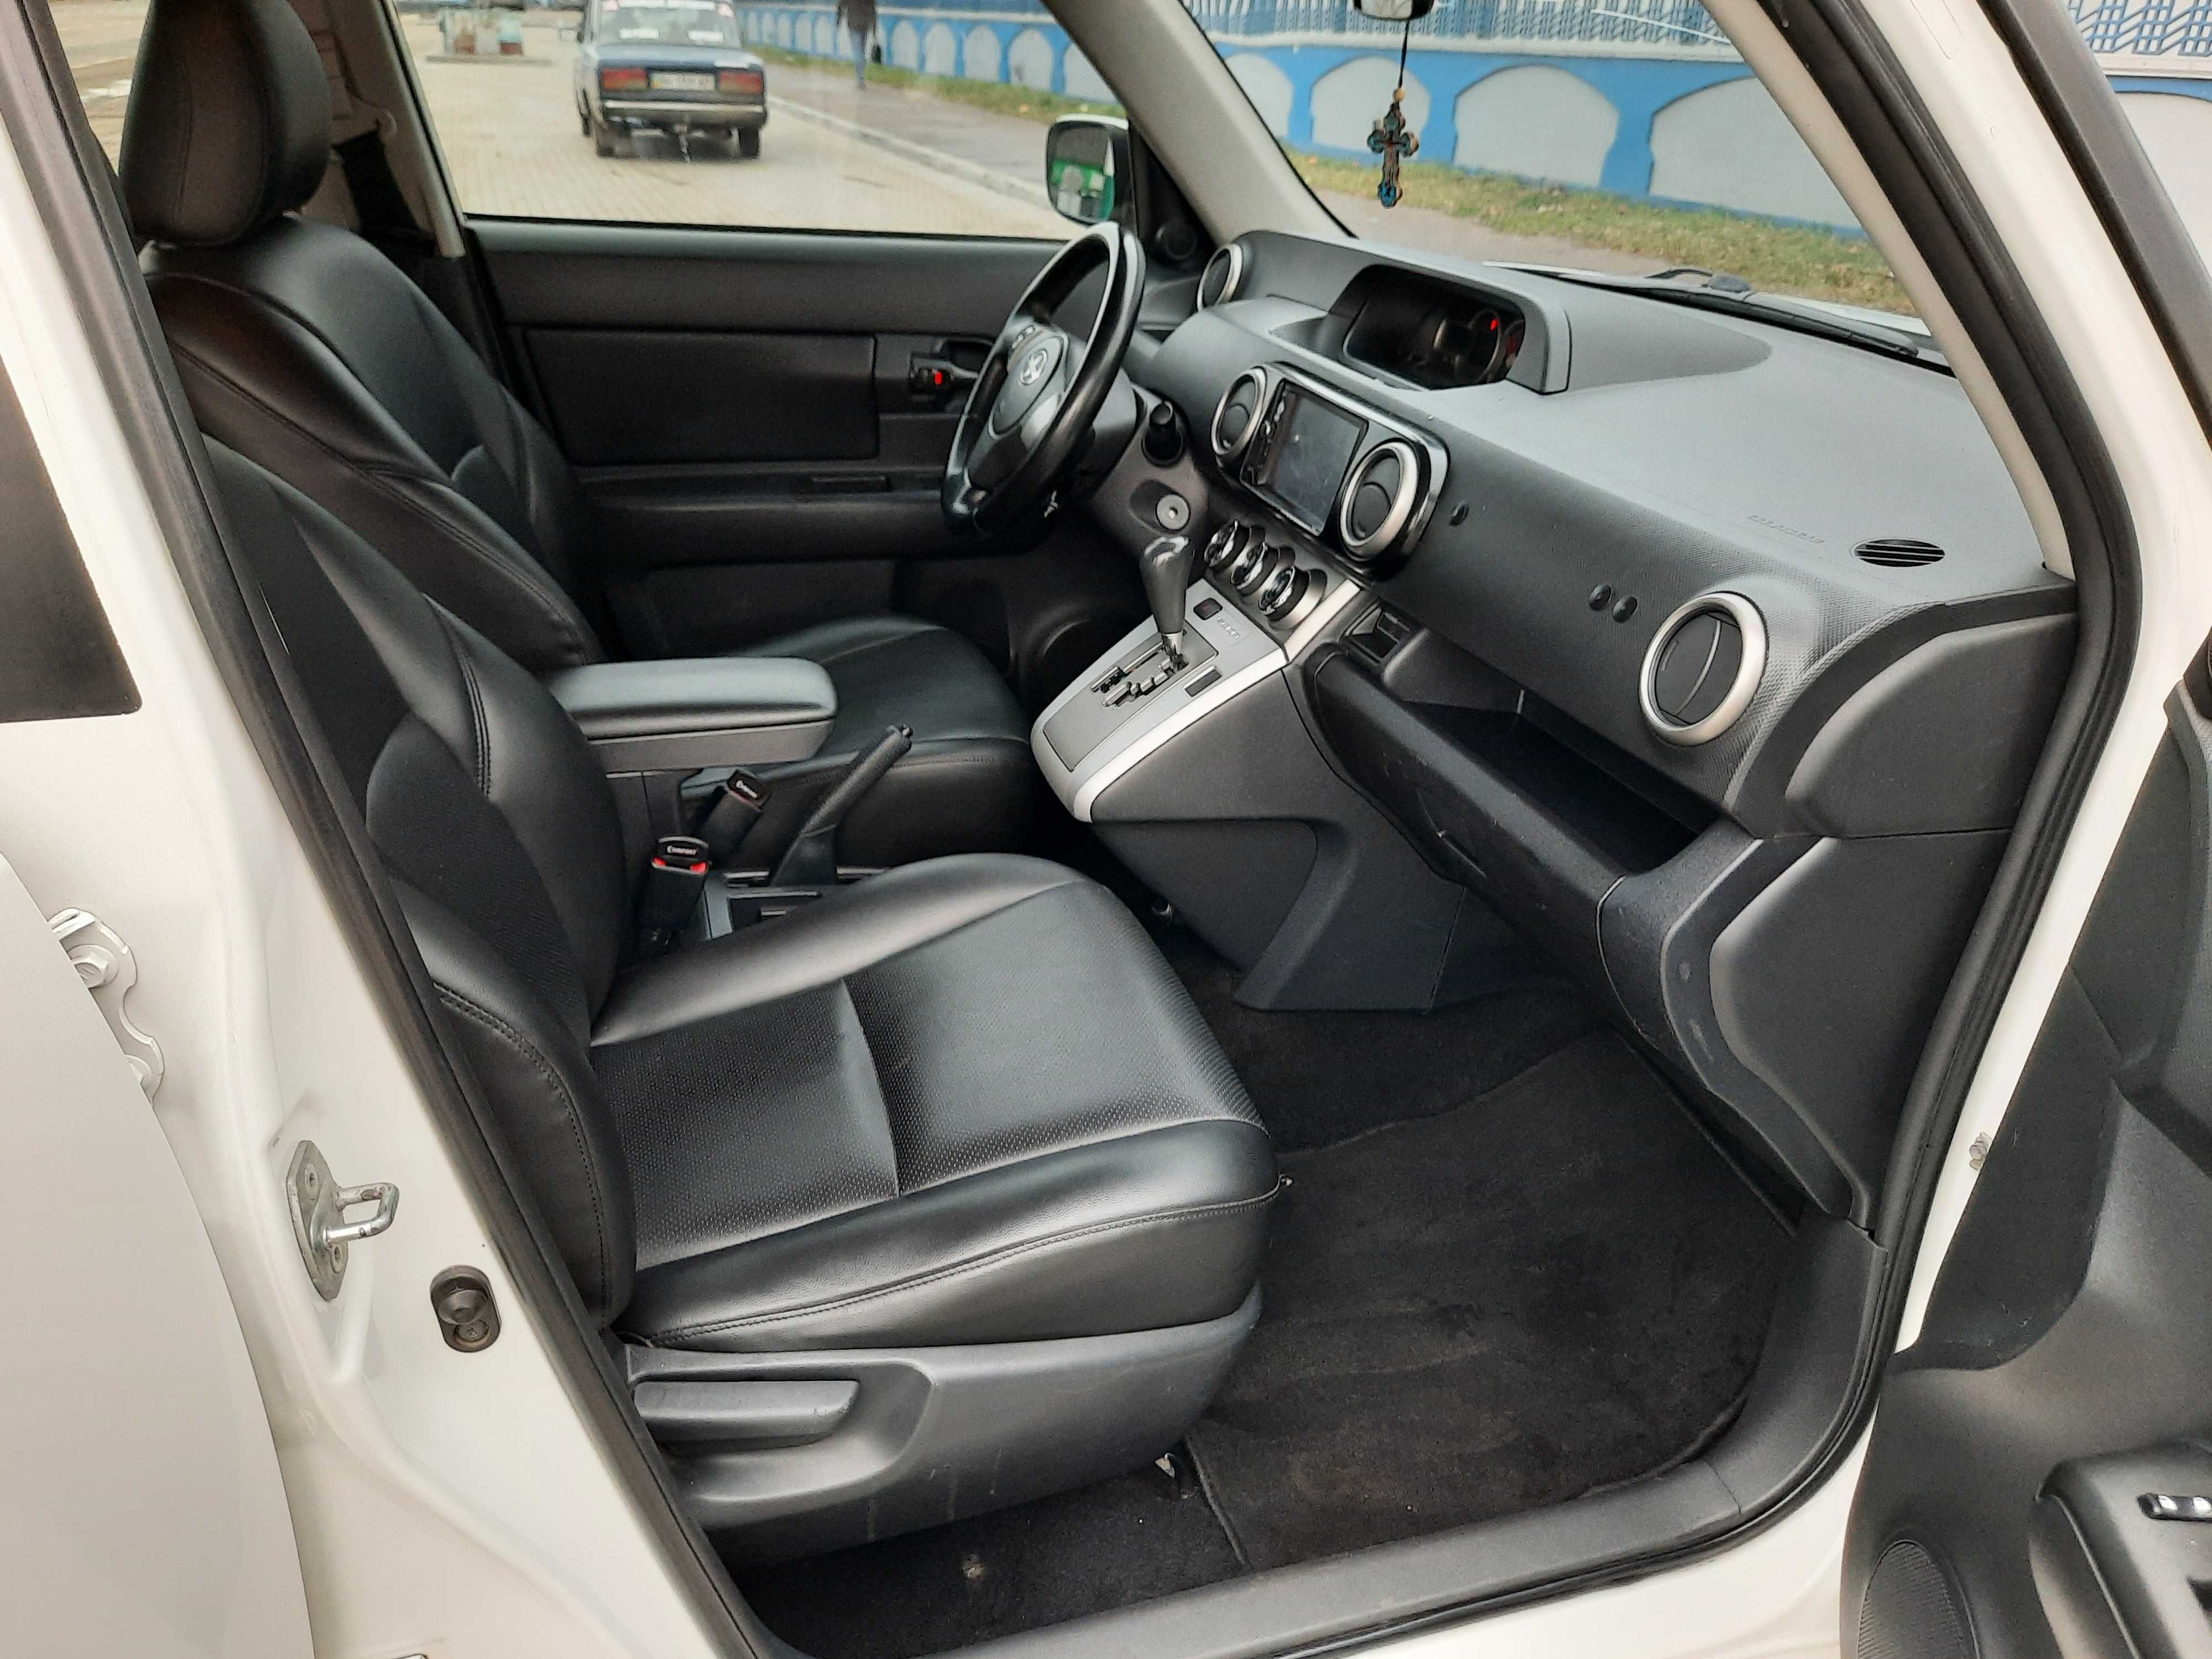 Toyota Scion    LPI автомат 2,4 л. 2013г.в.